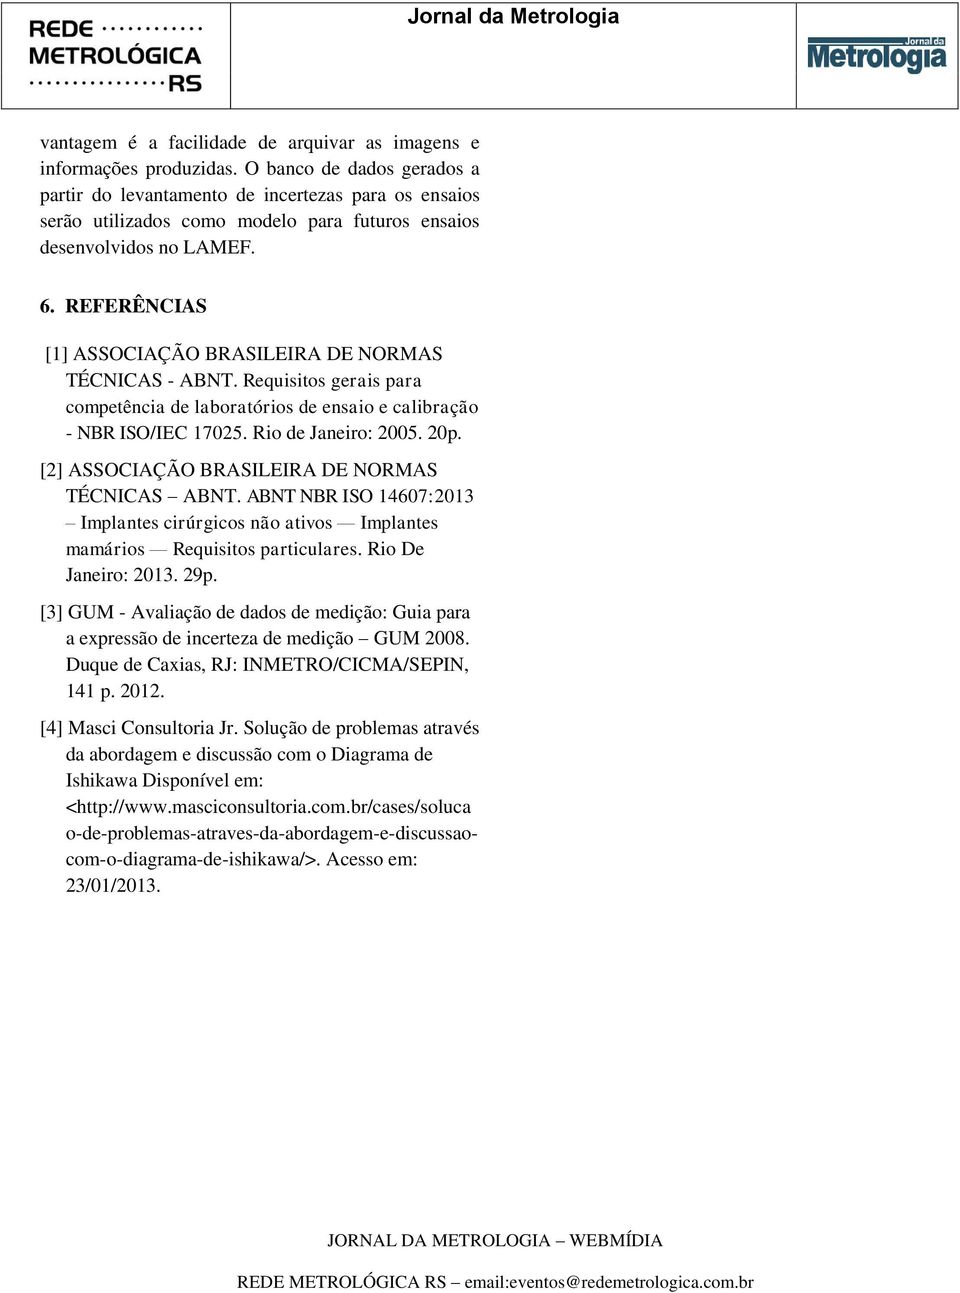 REFERÊNCIAS [1] ASSOCIAÇÃO BRASILEIRA DE NORMAS TÉCNICAS - ABNT. Requisitos gerais para competência de laboratórios de ensaio e calibração - NBR ISO/IEC 17025. Rio de Janeiro: 2005. 20p.